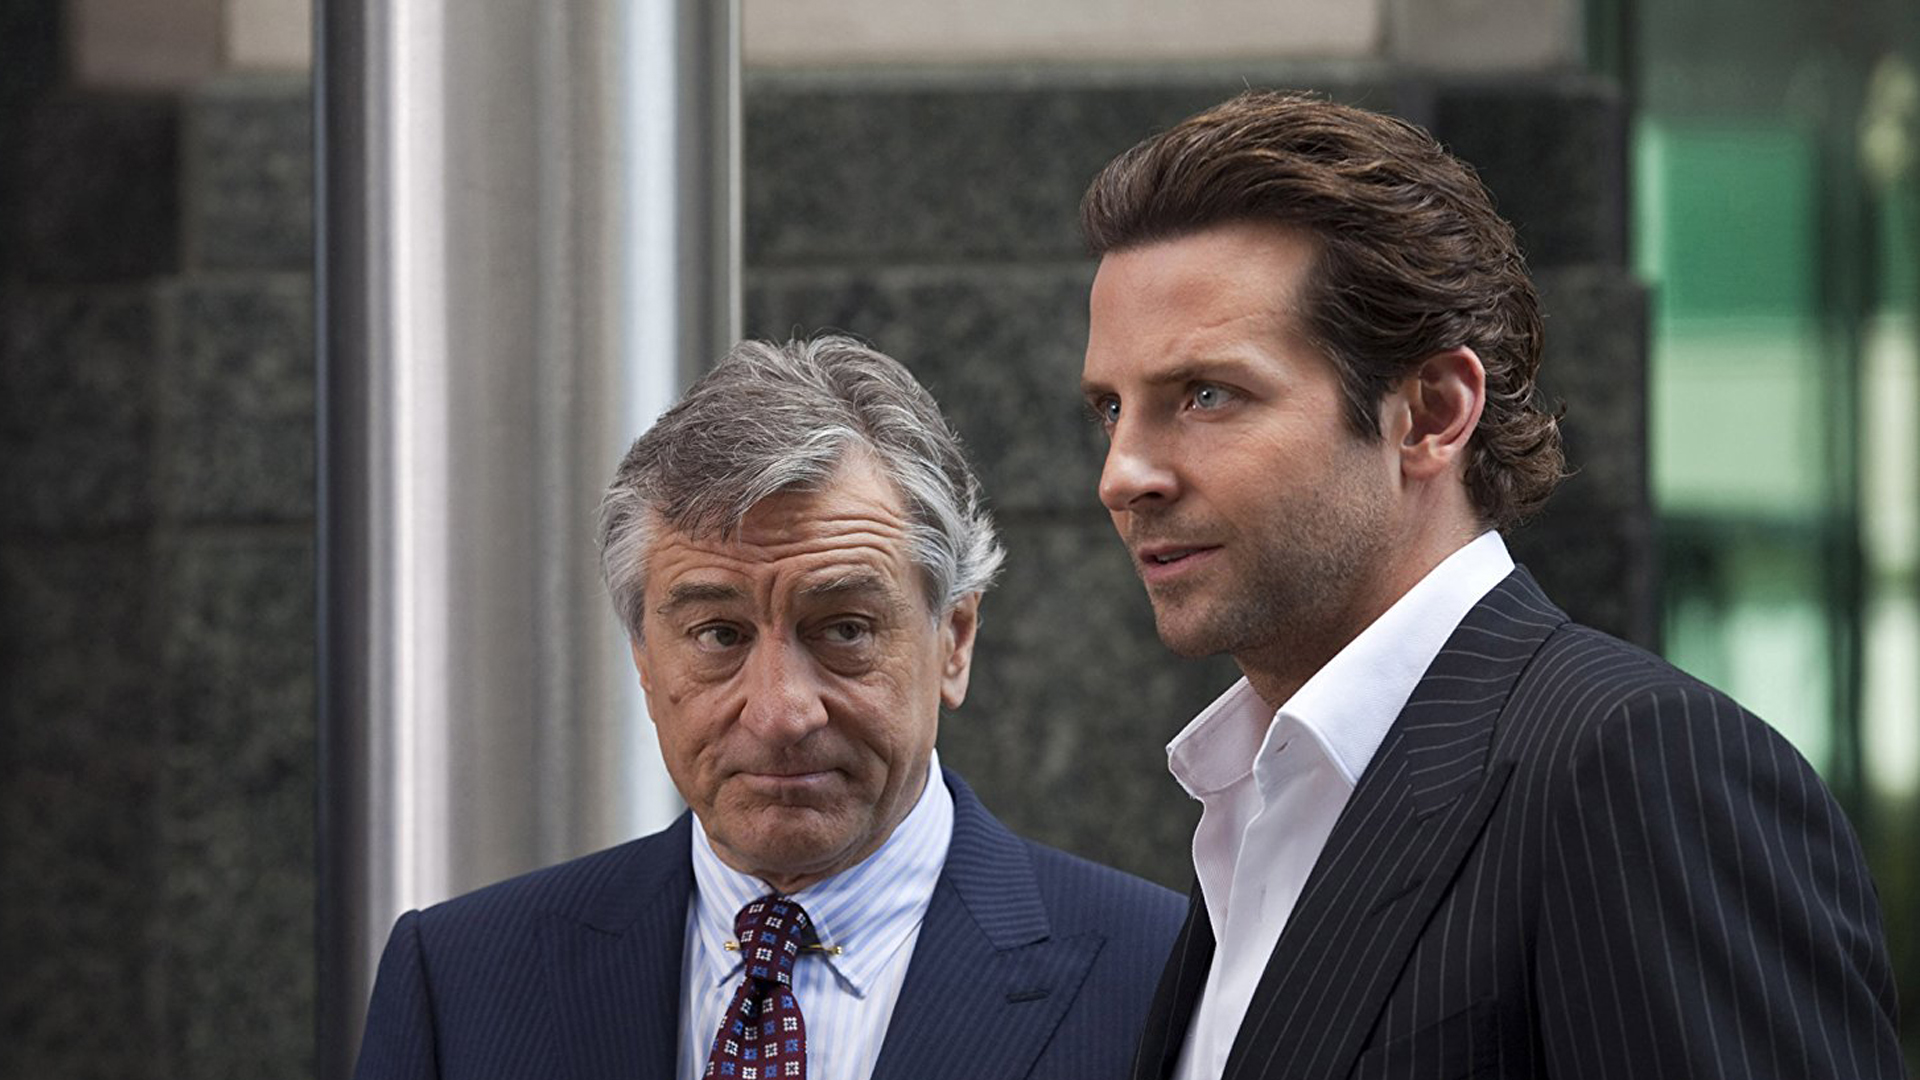 OHNE LIMIT: Robert De Niro und Bradley Cooper stehen nebeneinander und tragen beide einen Anzug.